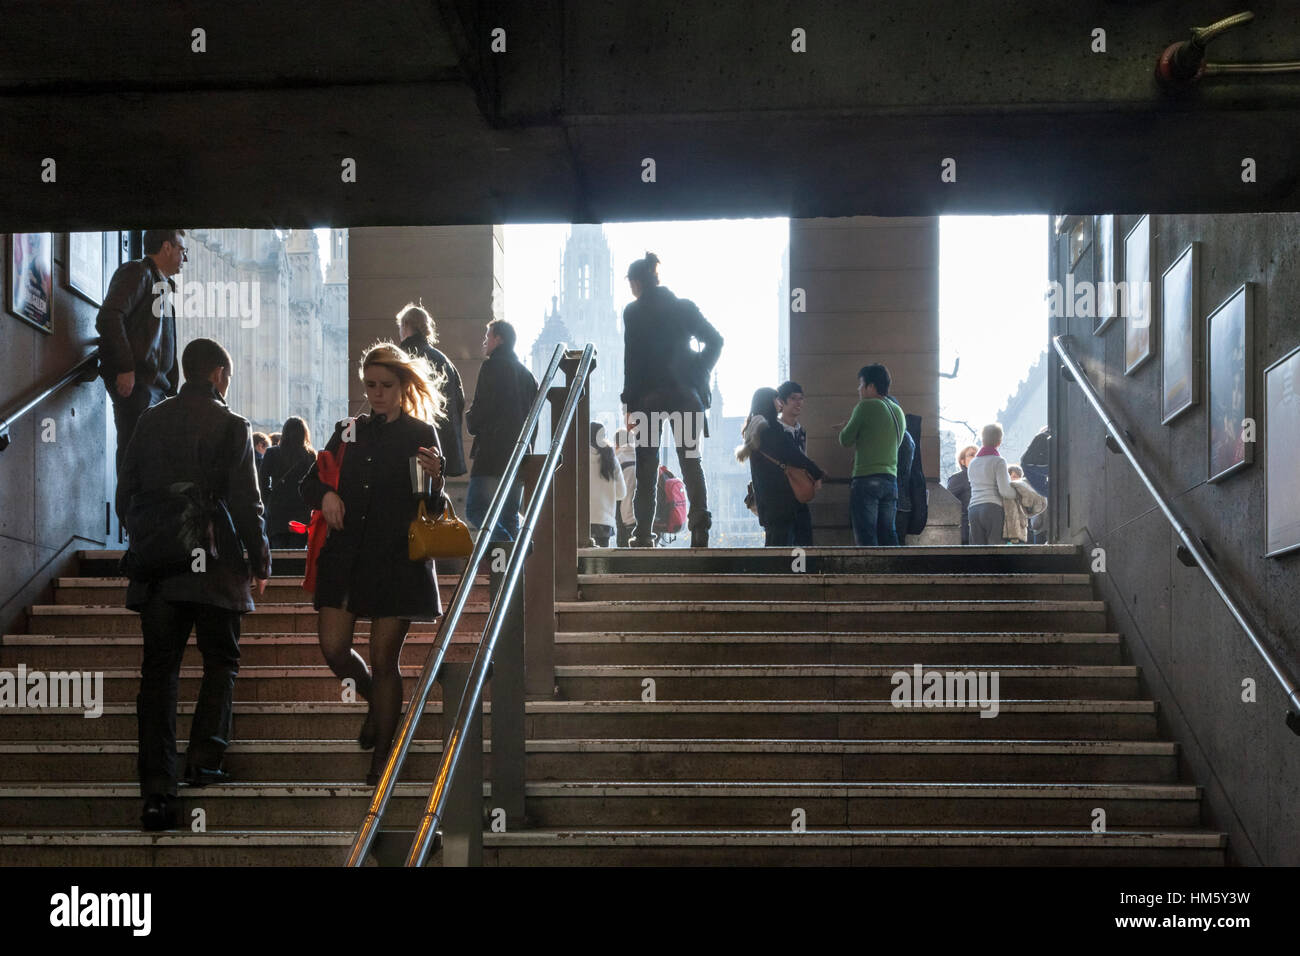 Le persone che entrano ed escono una stazione della metropolitana. Entrata a Westminster La stazione della metropolitana di Londra, Inghilterra, Regno Unito Foto Stock